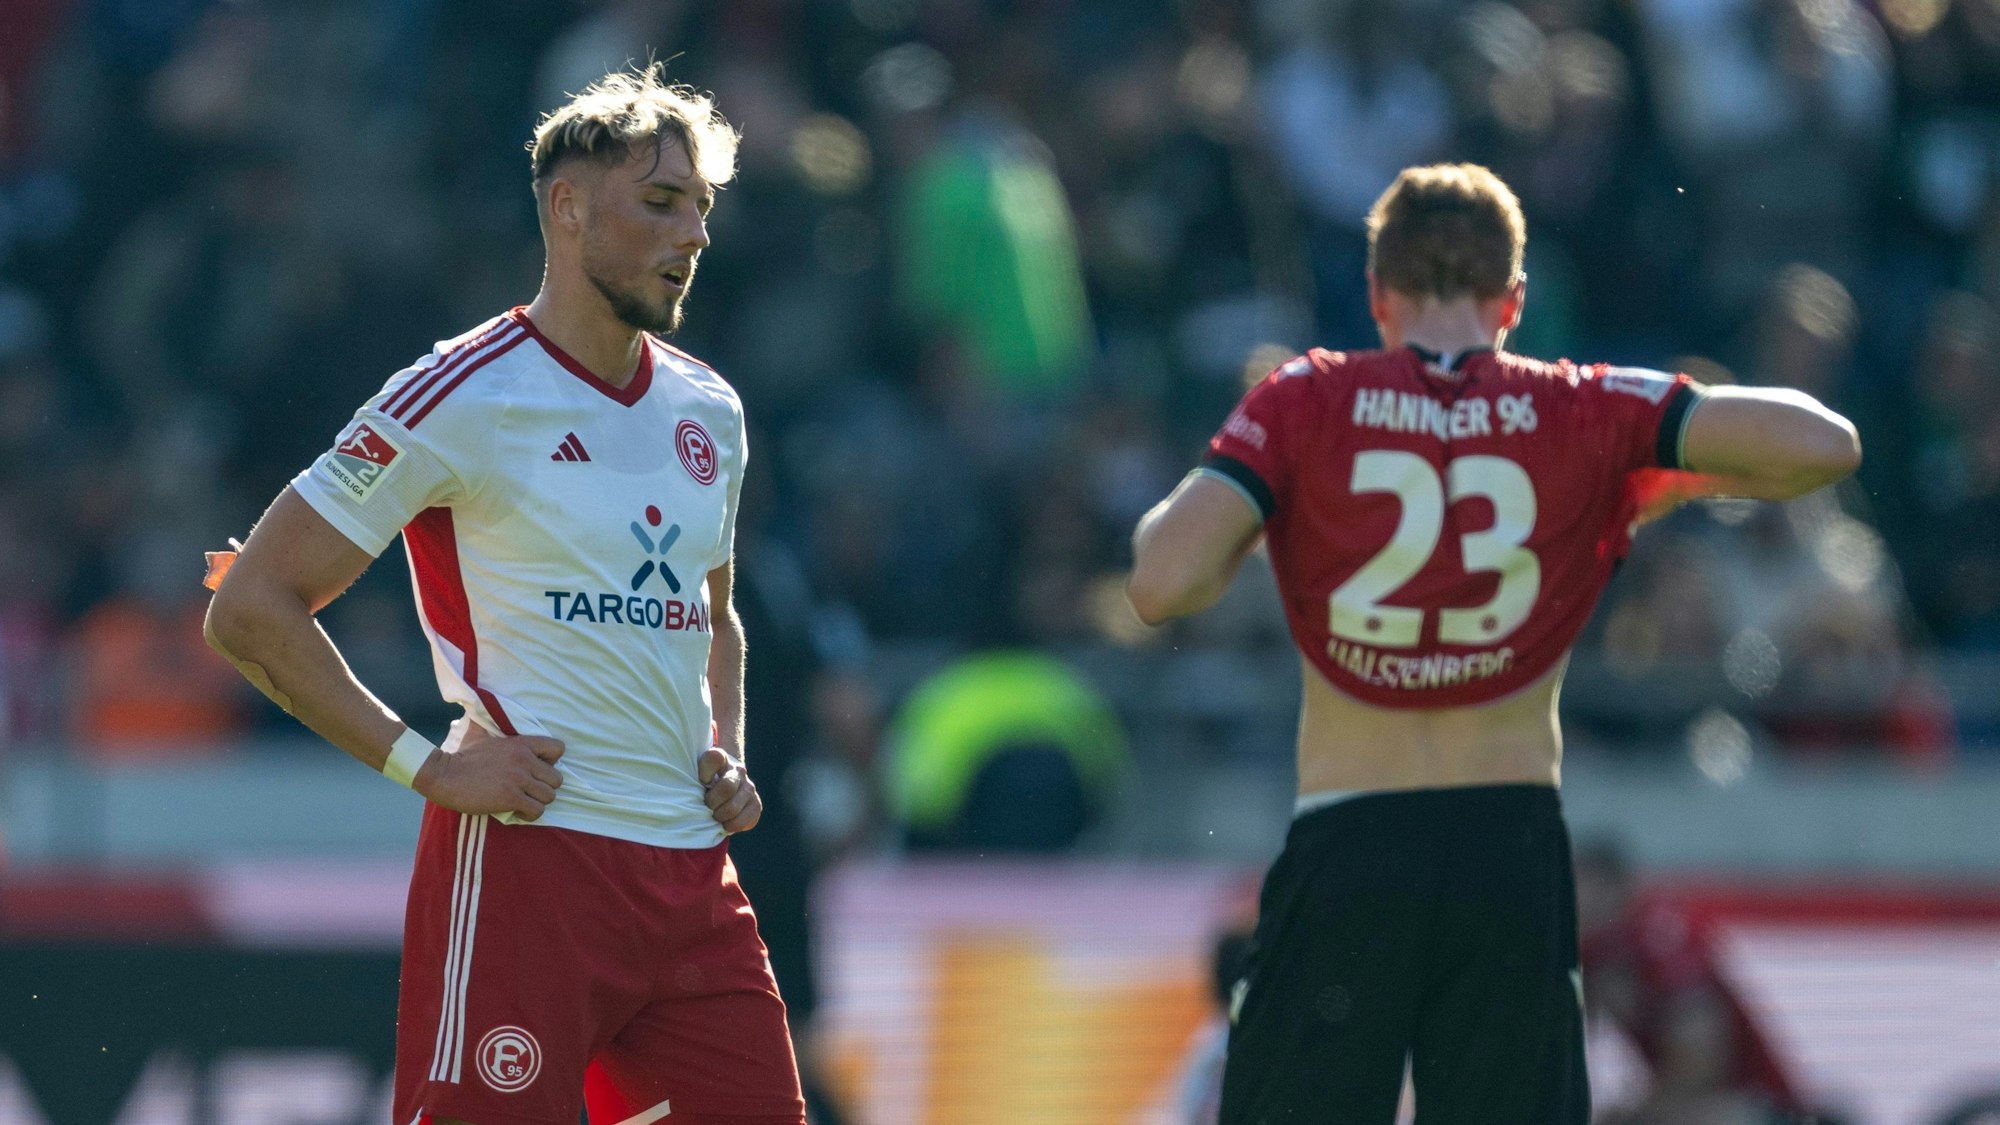 Fortuna Düsseldorfs Jona Niemiec steht nach dem Schlusspfiff in Hannover enttäuscht auf dem Rasen.